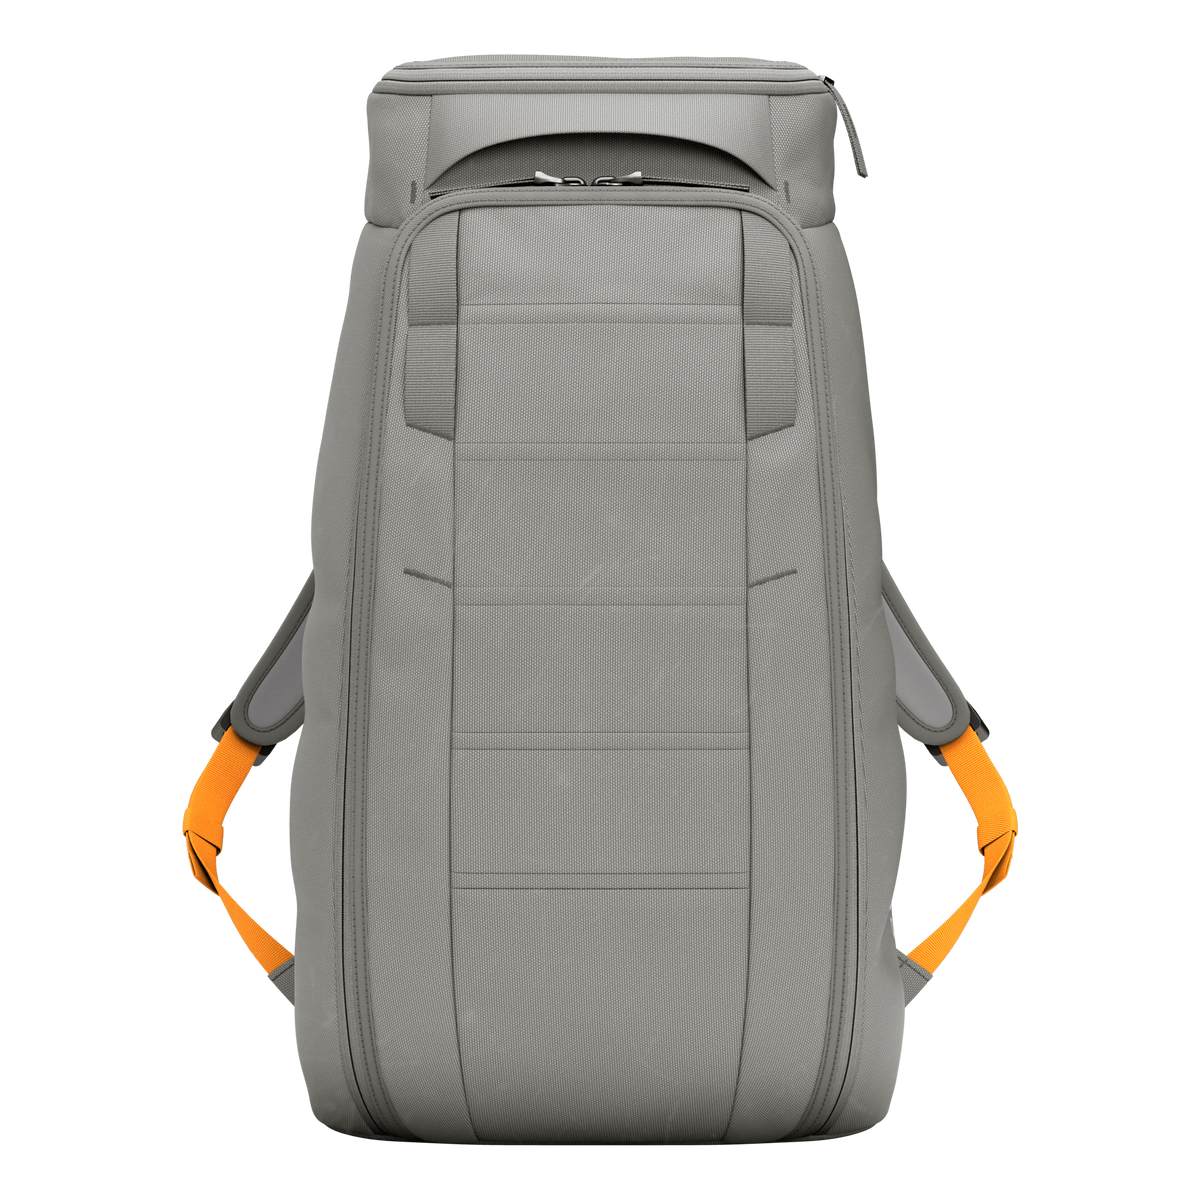 Hugger Backpack 25l Sand Grey